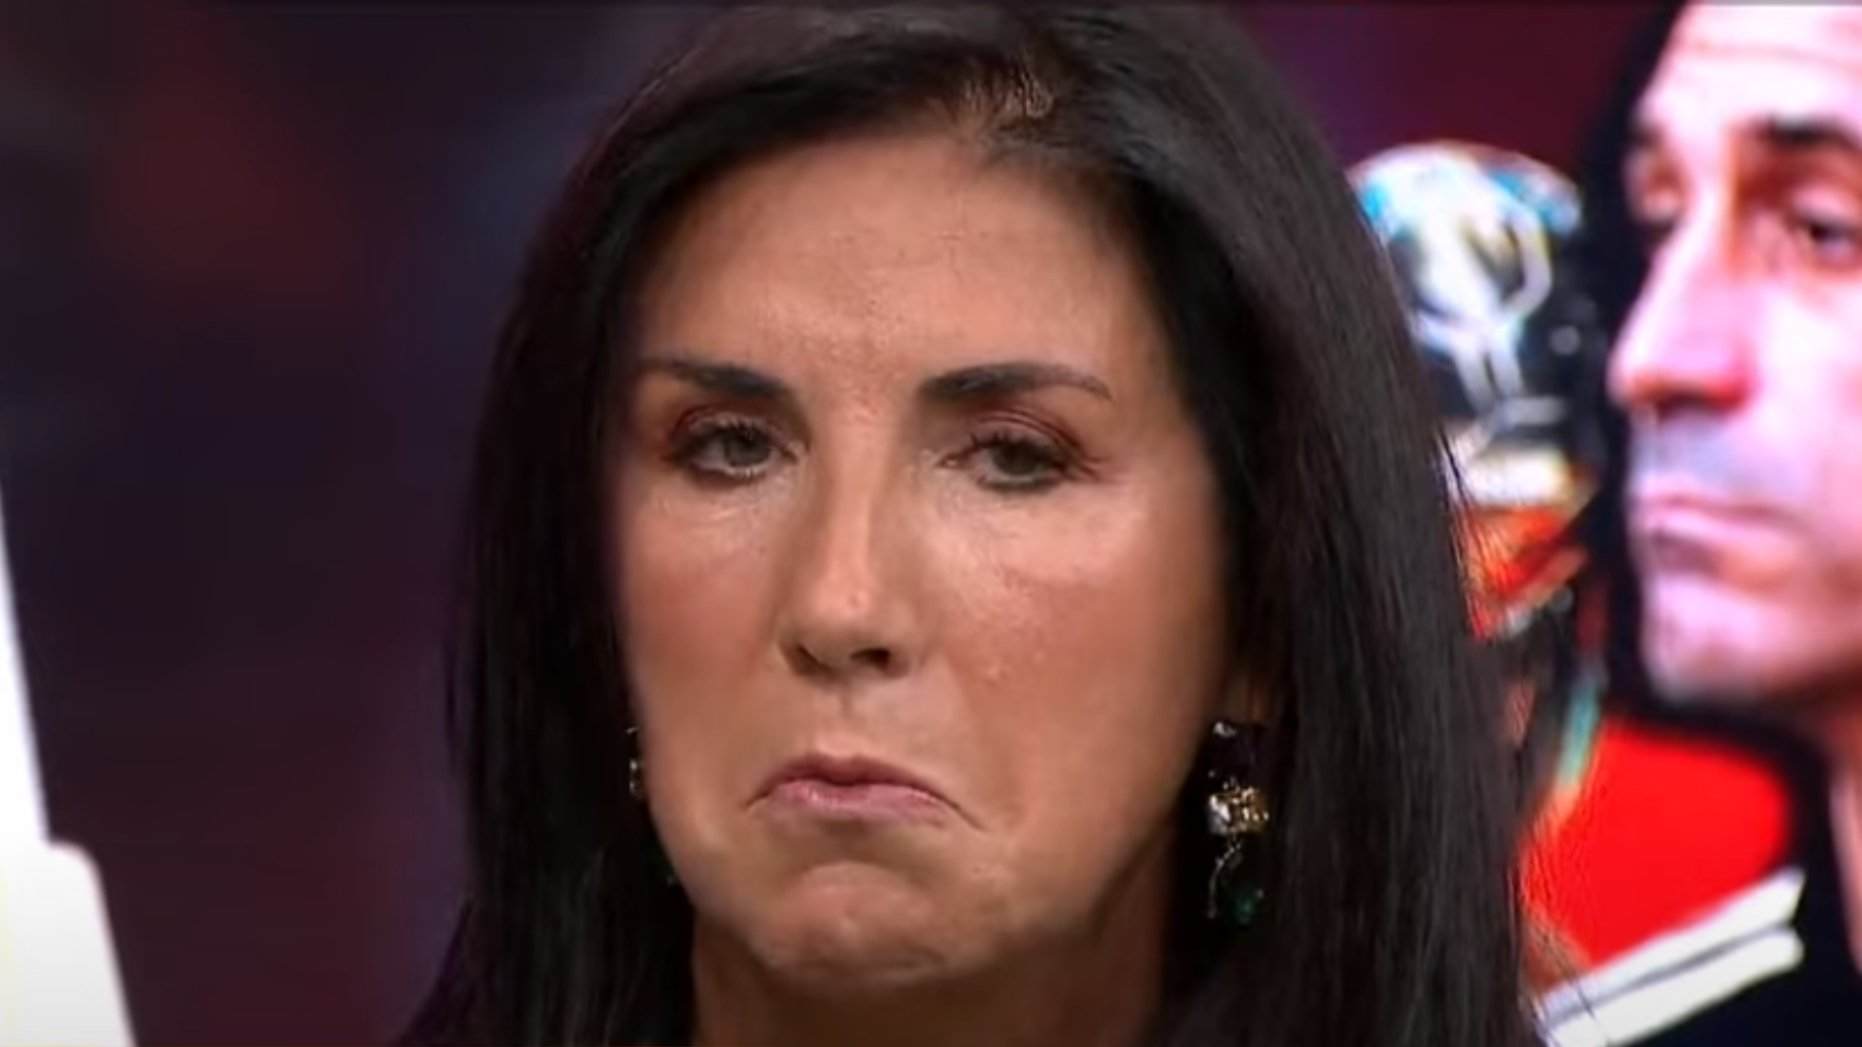 Cristina Cubero fastigueja la xarxa parlant sobre el petó de Rubiales: "vergüenza ajena"